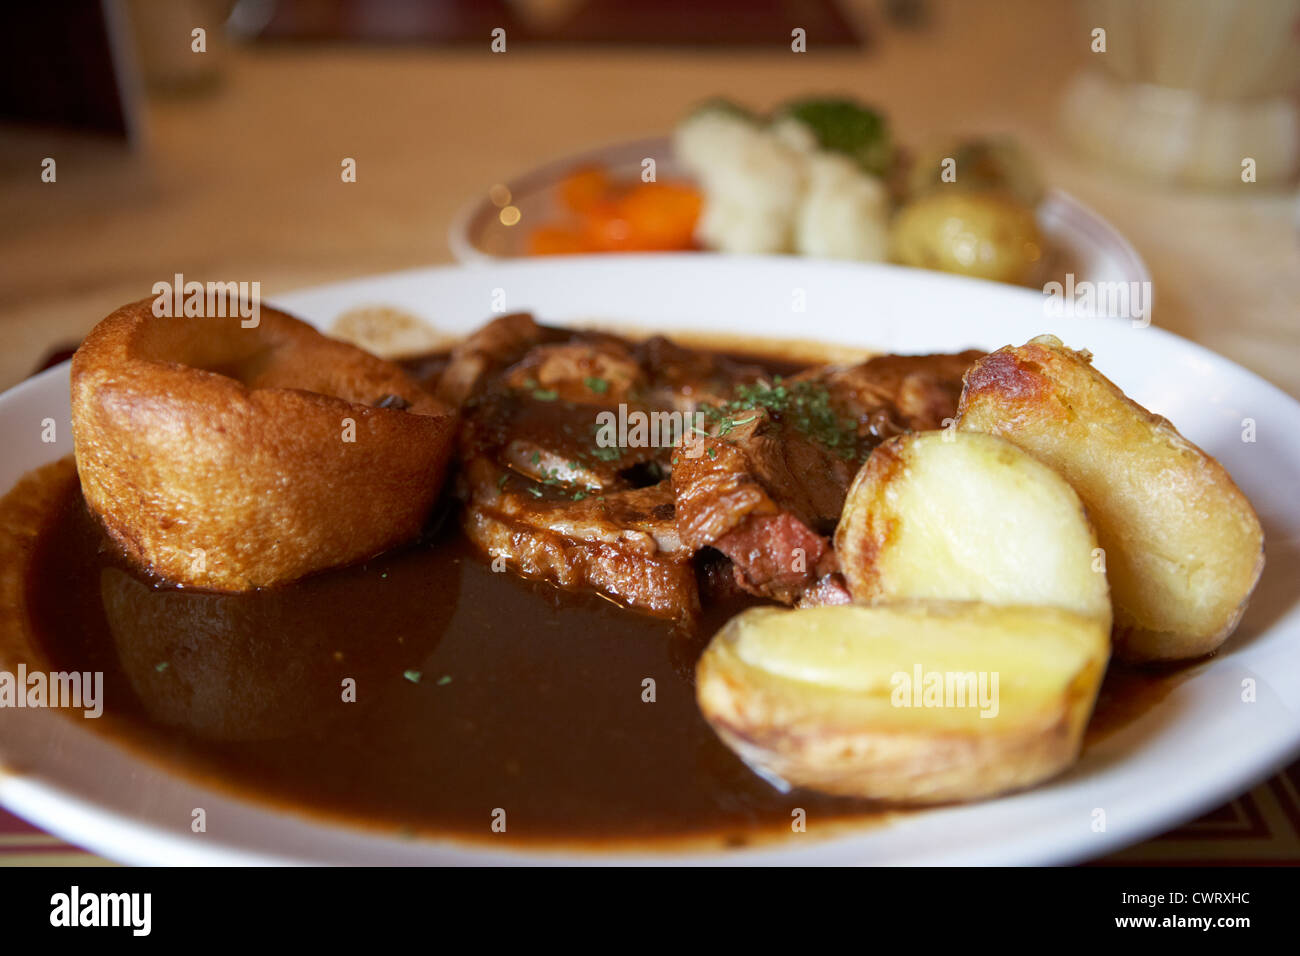 Am Sonntag wird in einem Pub mit Lammkartoffeln serviert yorkshire Pudding Gemüse und Gravy scotland UK Stockfoto